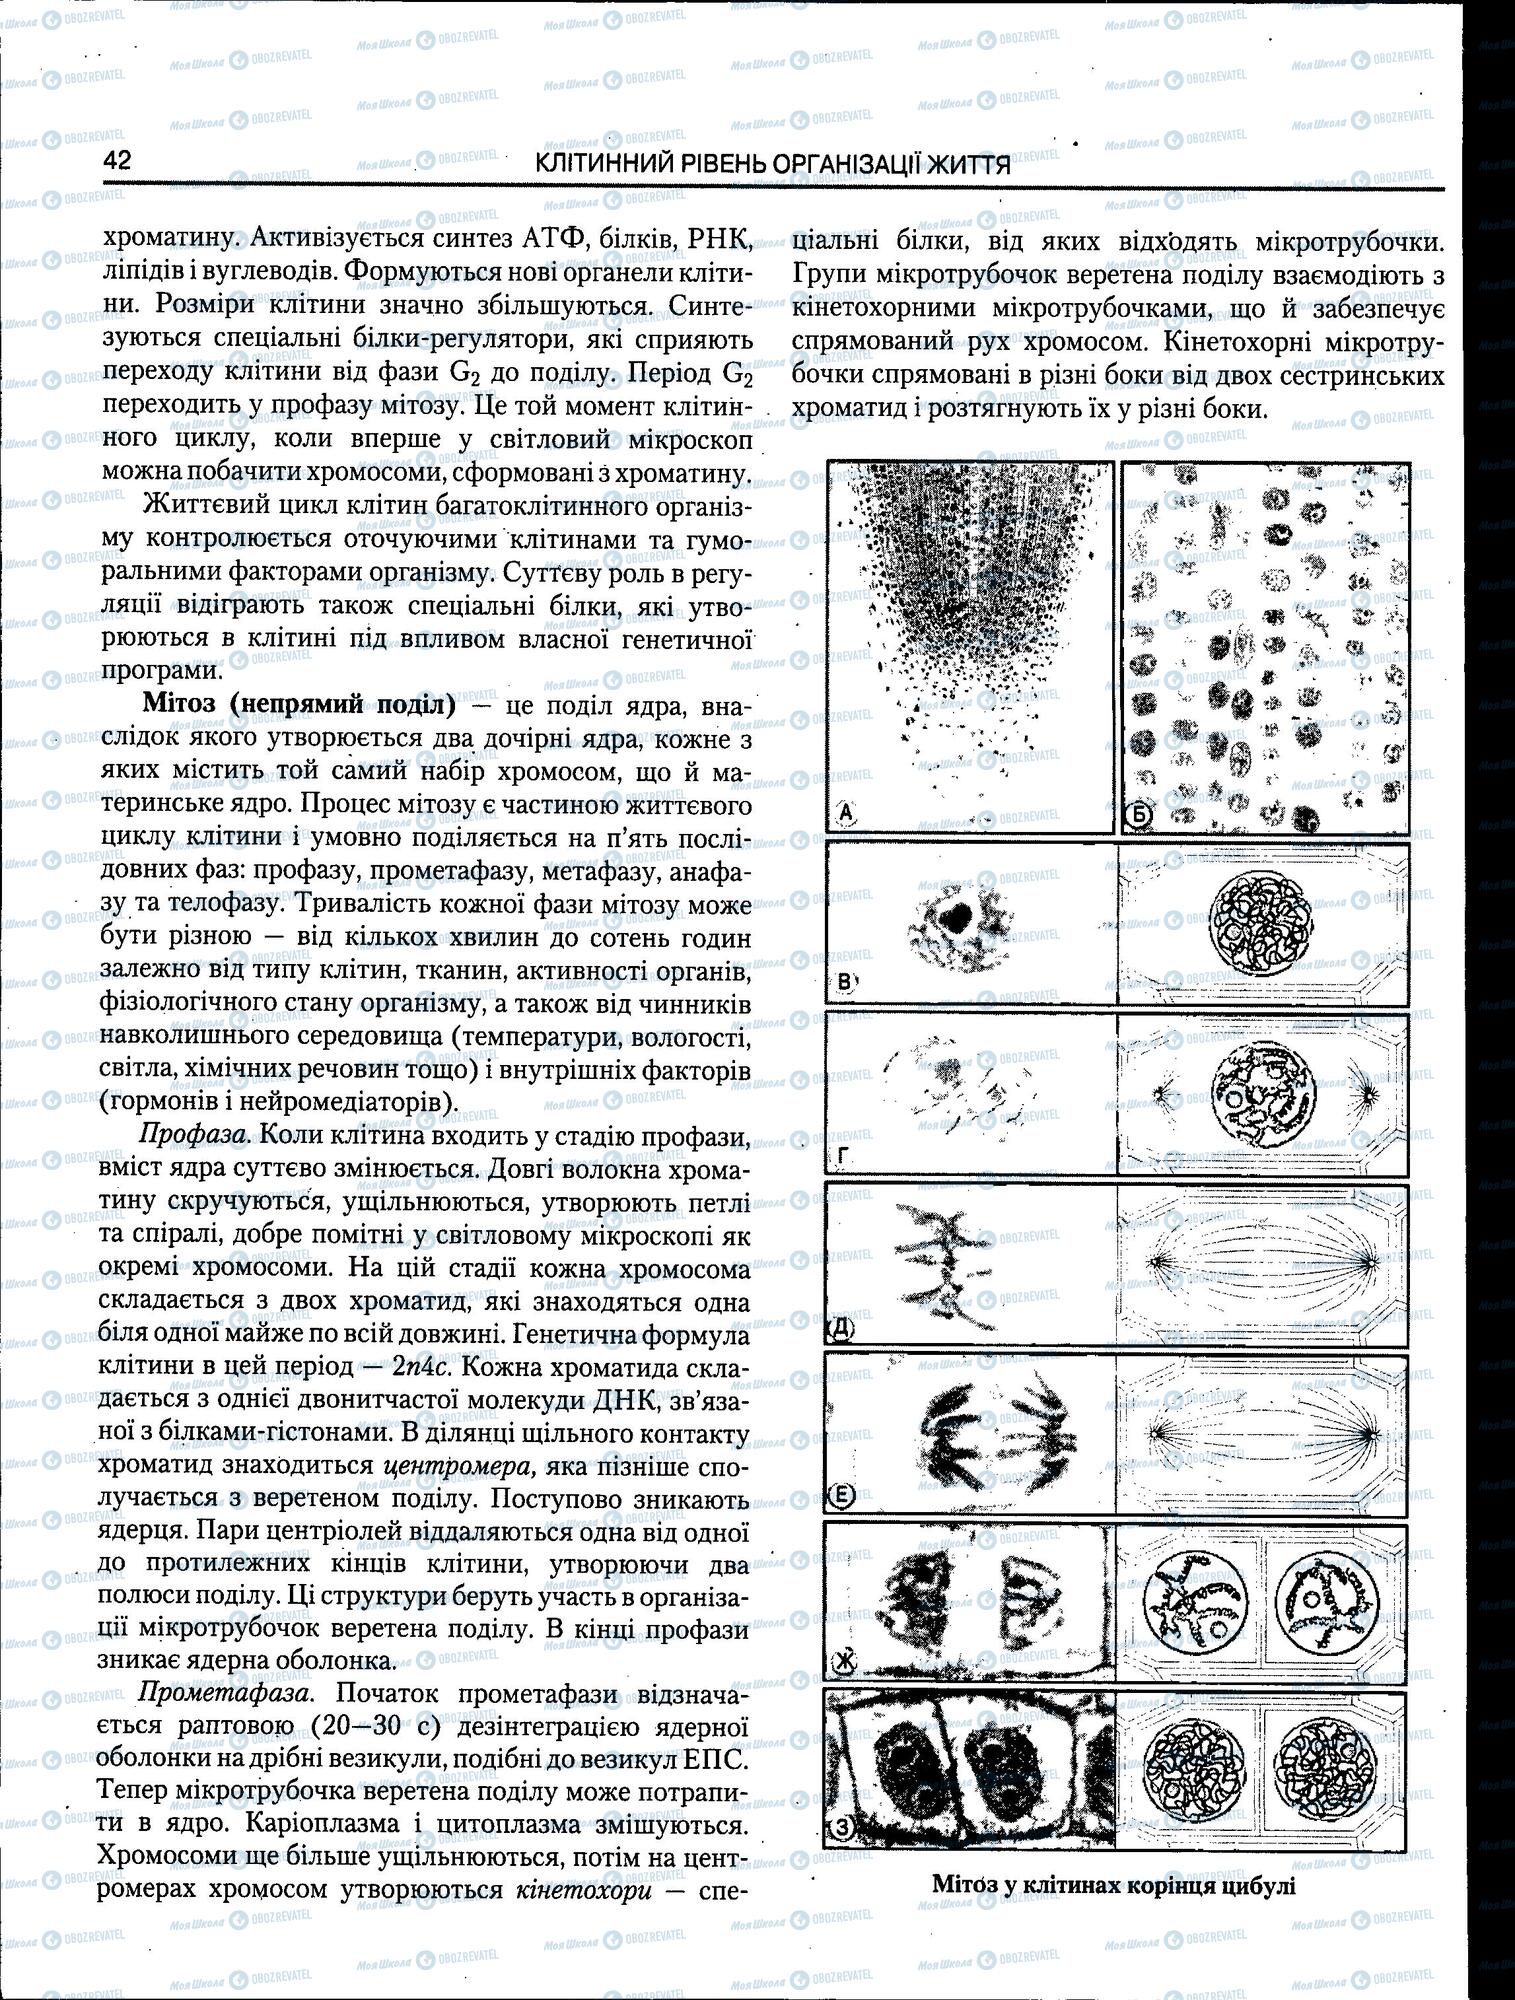 ЗНО Биология 11 класс страница 42